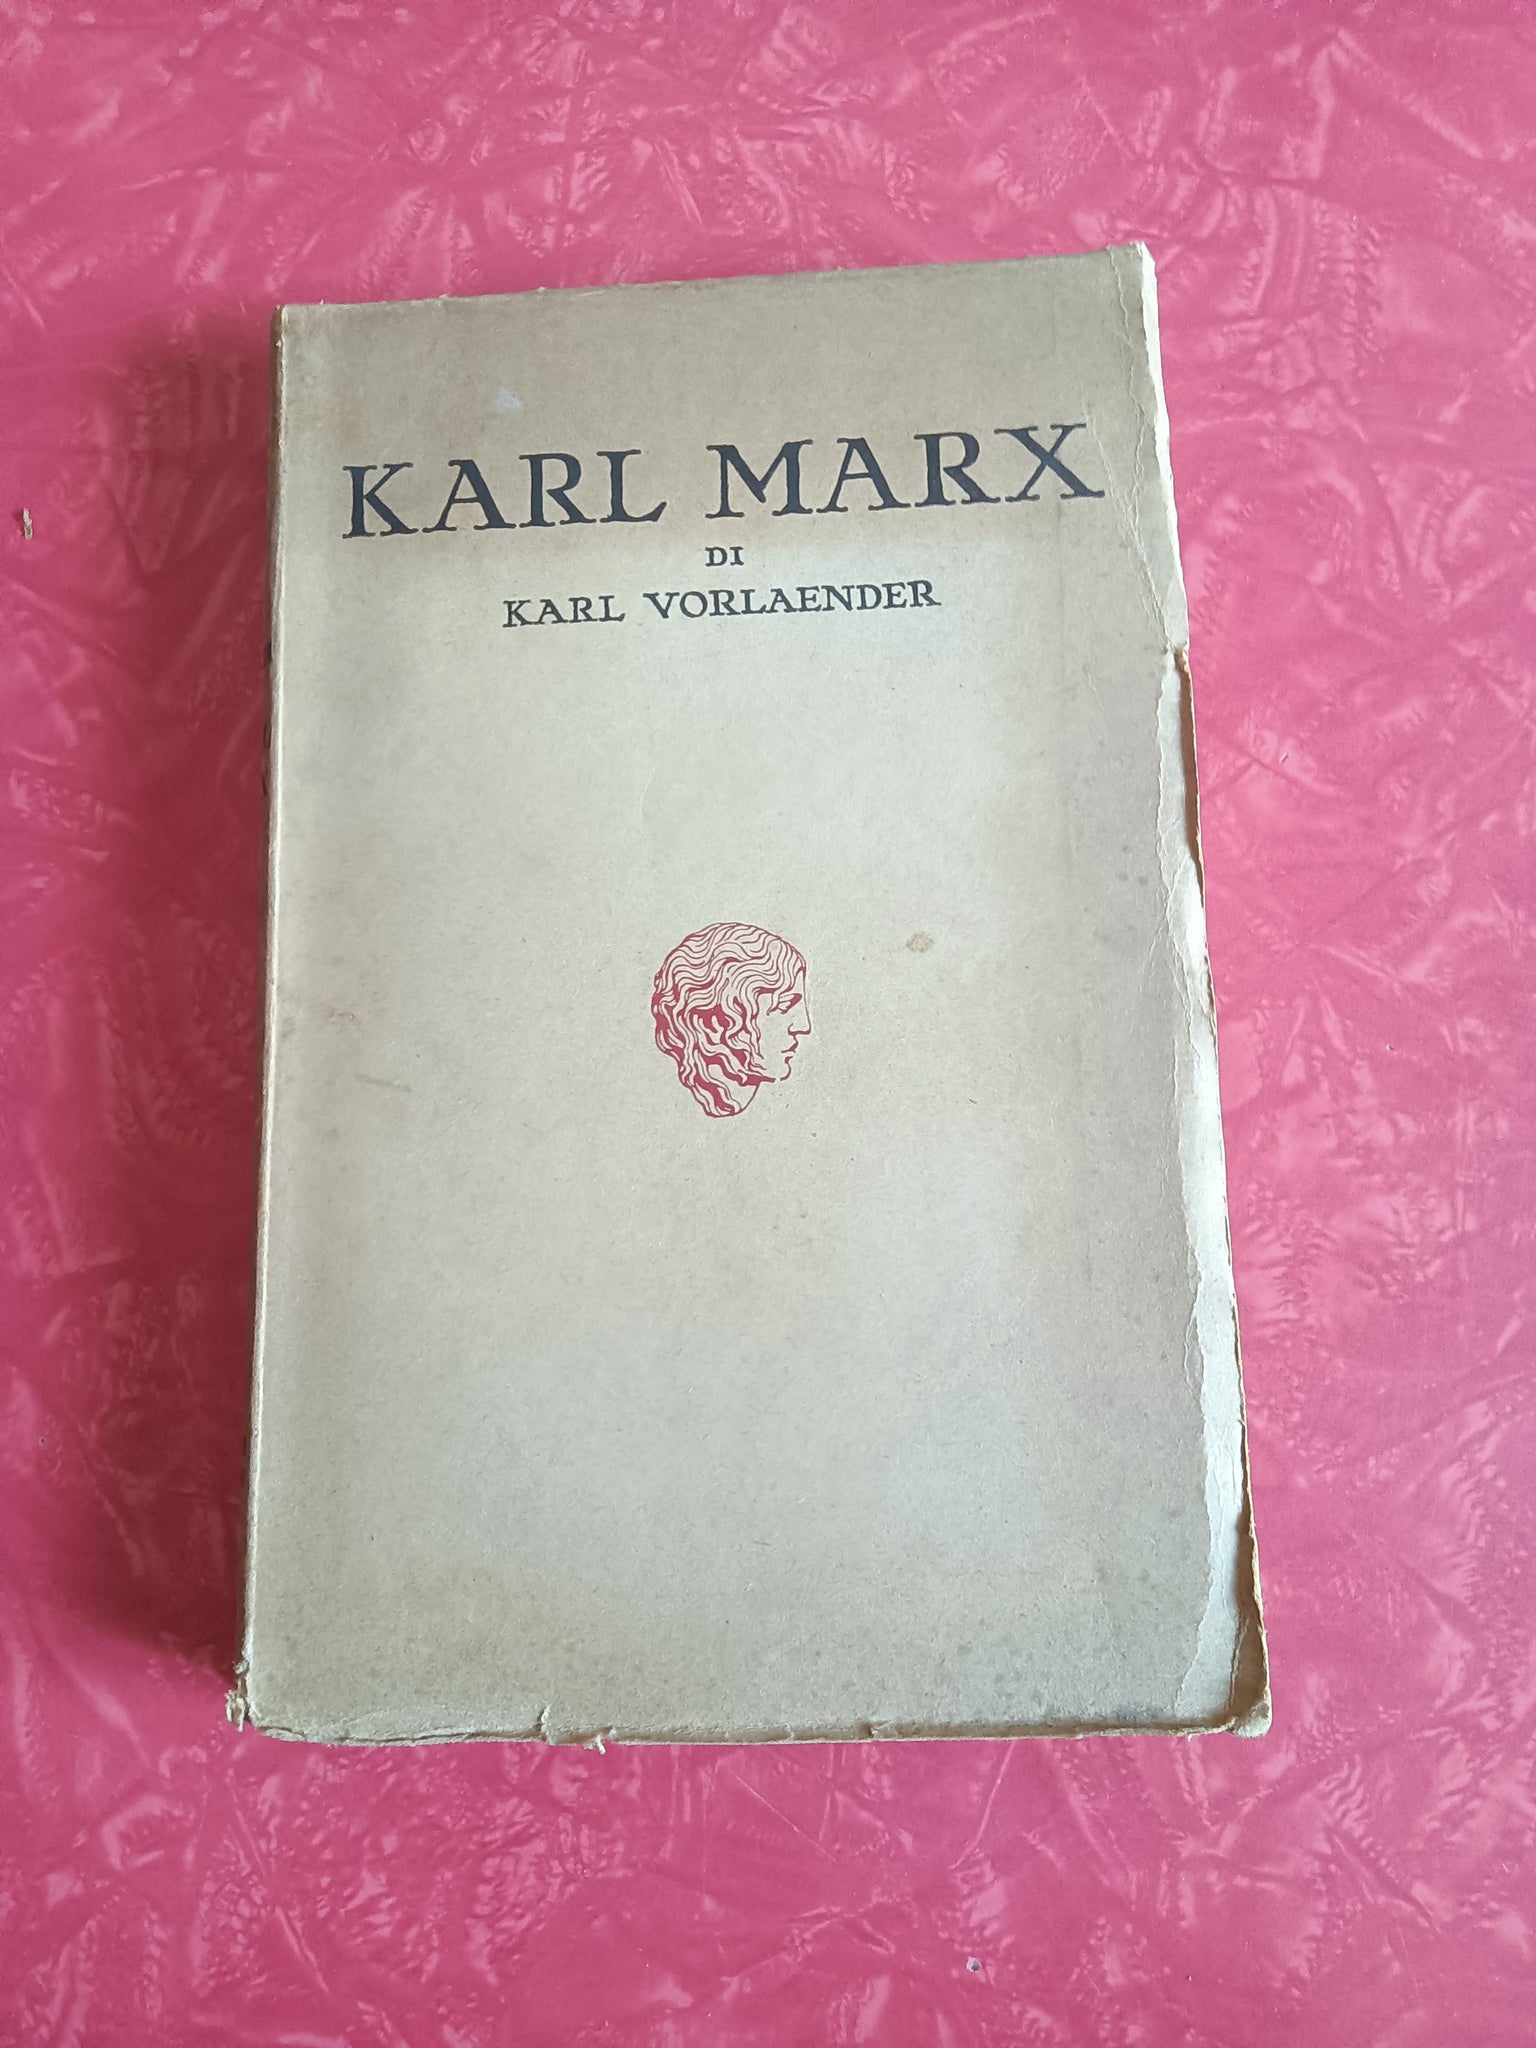 Karl marx la vita e l'opera  Karl Vorlaender – Libreria Obli